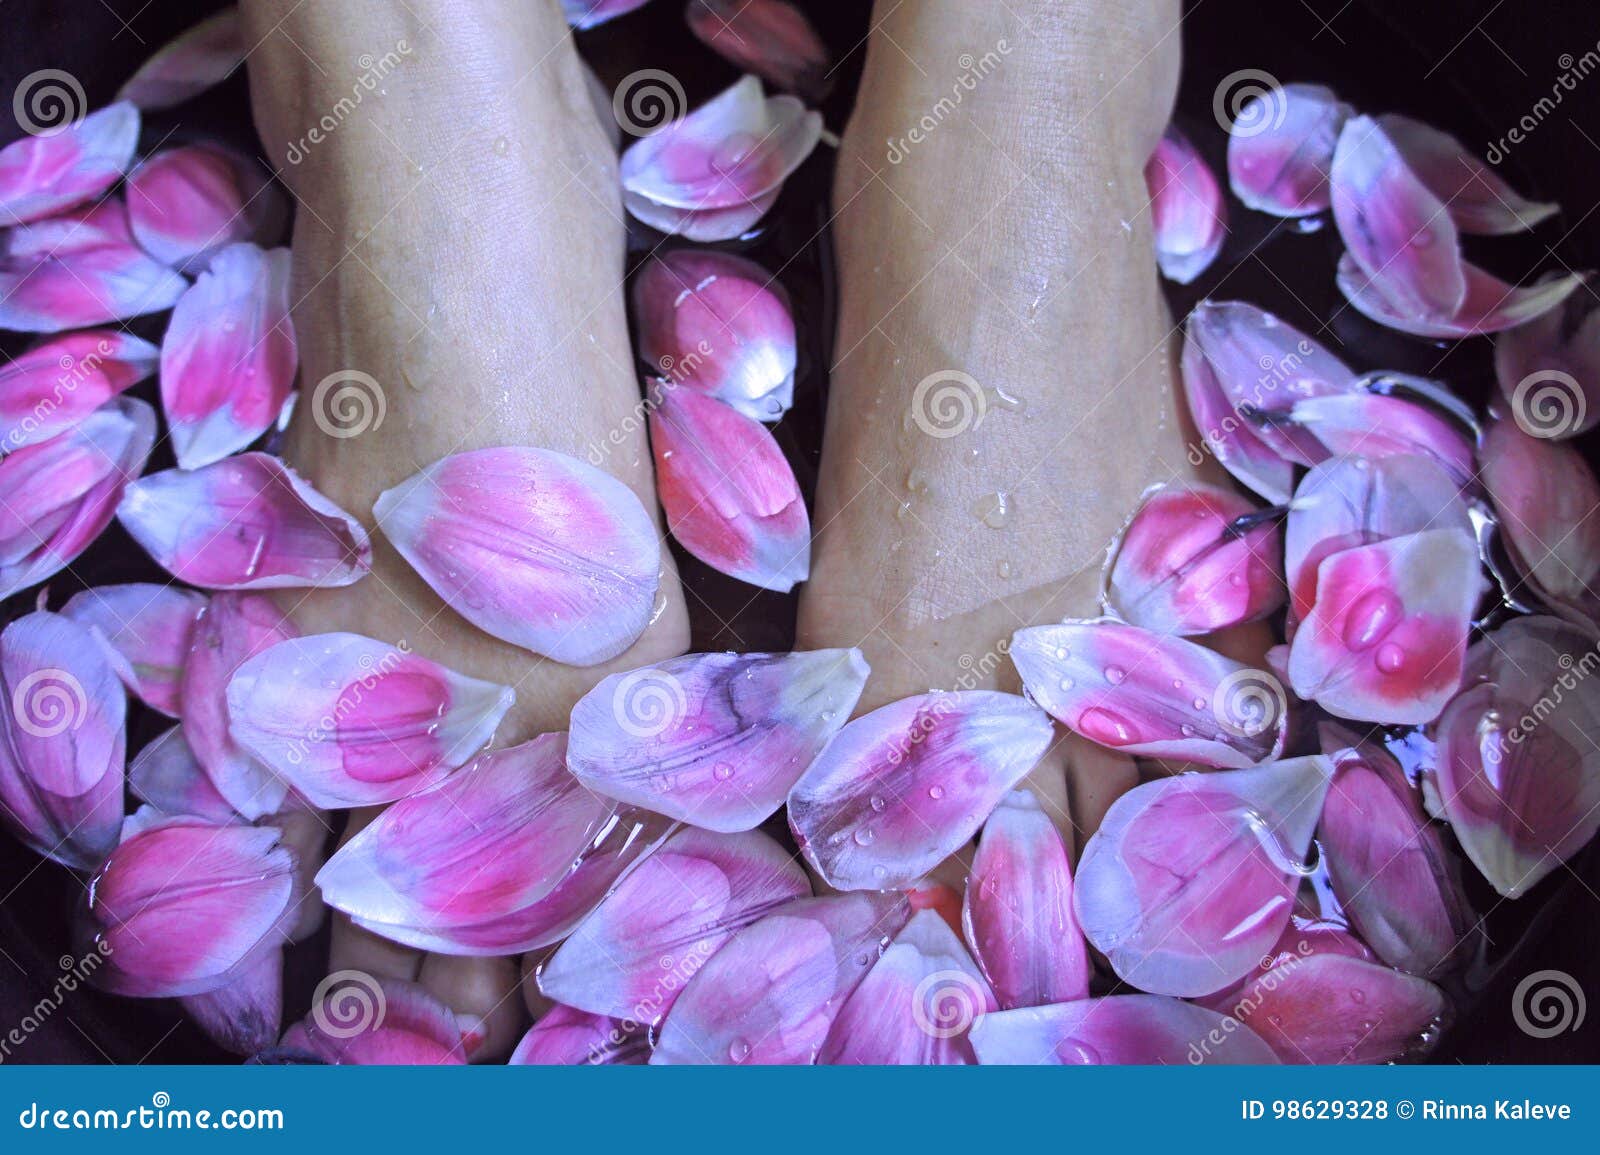 asian flower massage